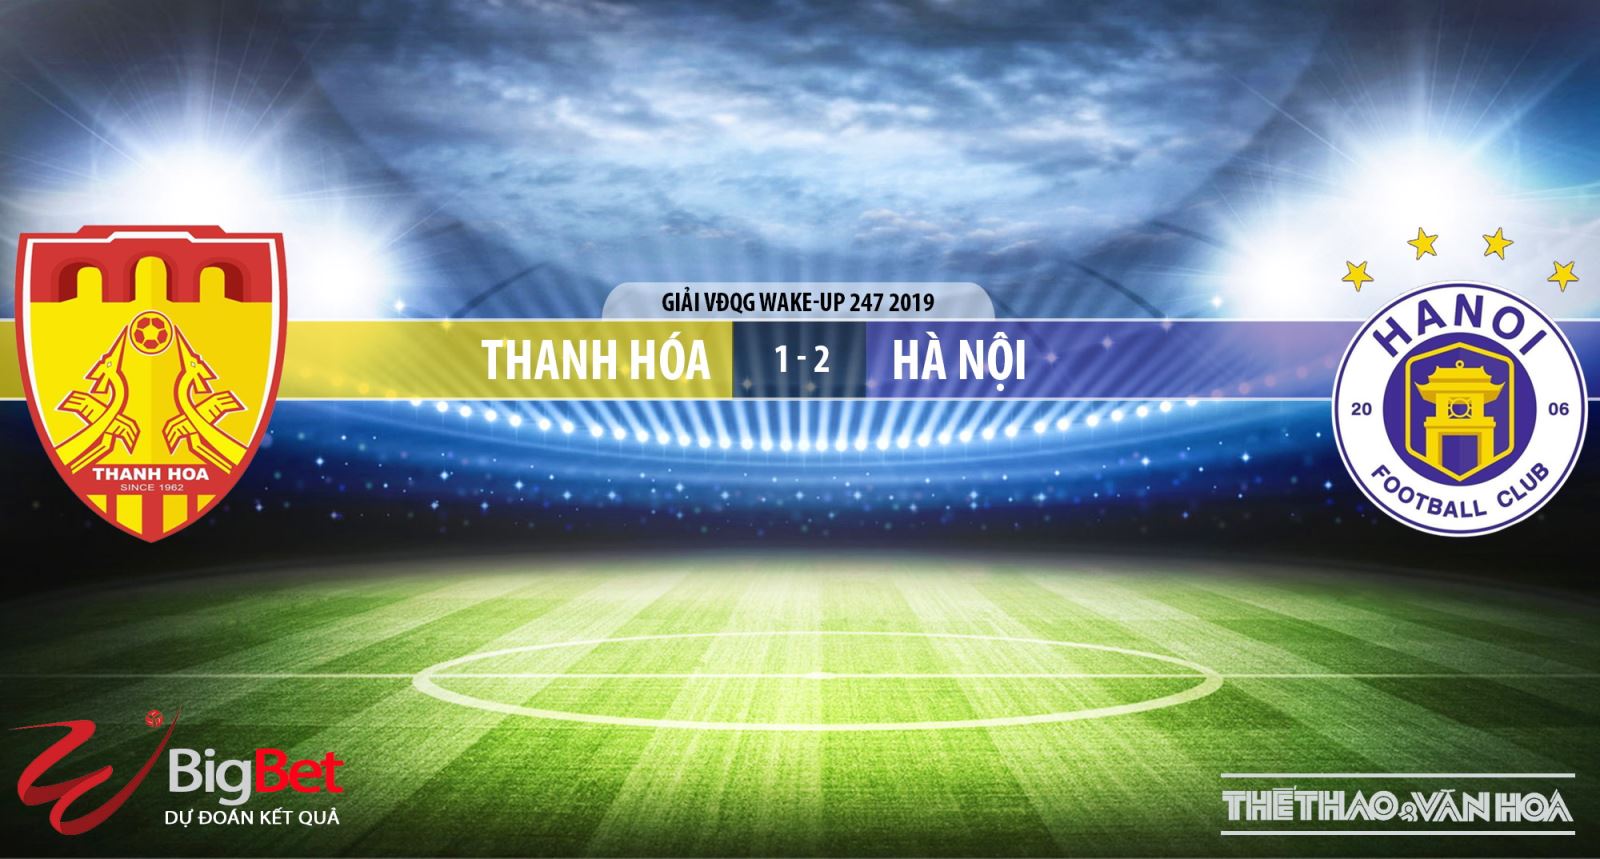 Thanh Hóa vs Hà Nội, Thanh Hóa, Hà Nội, truc tiep bong da, trực tiếp bóng đá, truc tiep Thanh Hoa, truc tiep Thanh Hoa vs Ha Noi, v league 2019, truc tiep v league, BDTV, FPT Play